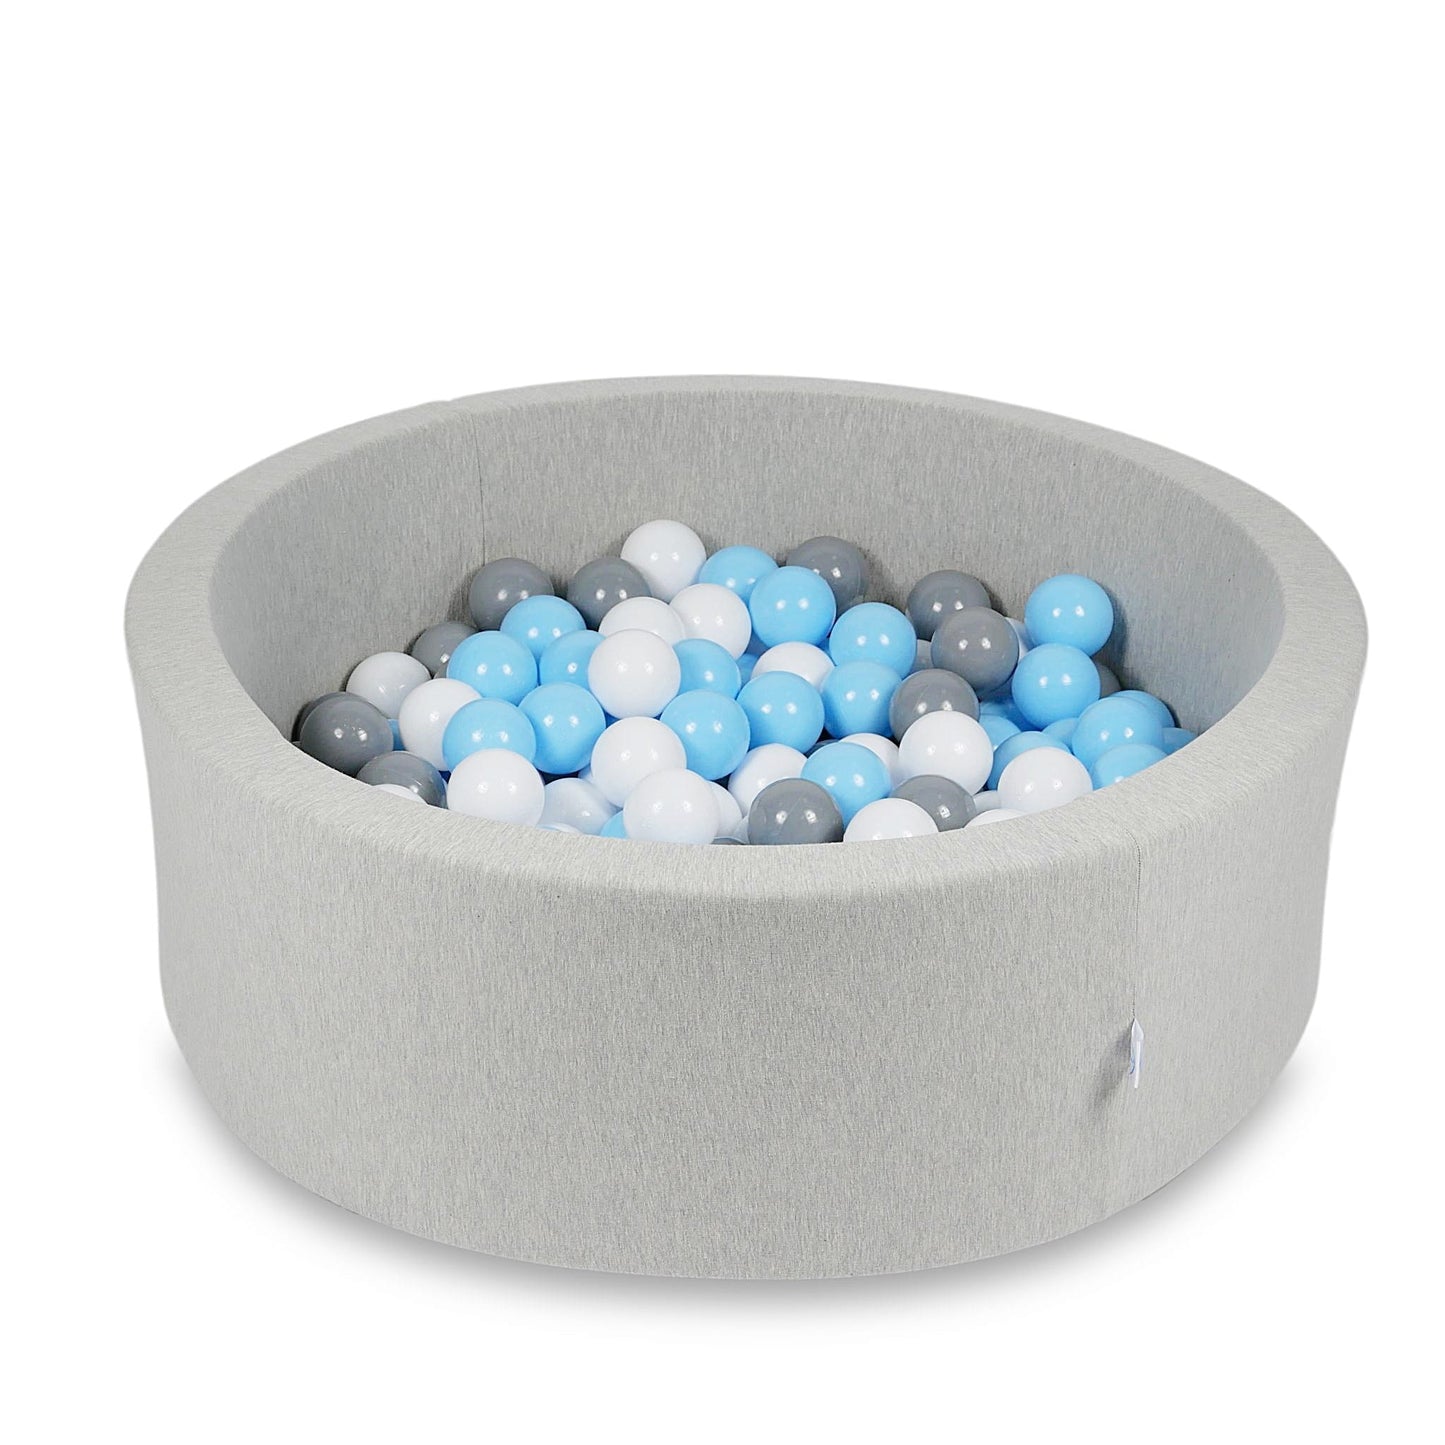 Piscine à Balles 90x30cm gris clair avec balles 200pcs (bleu clair, blanc, gris)